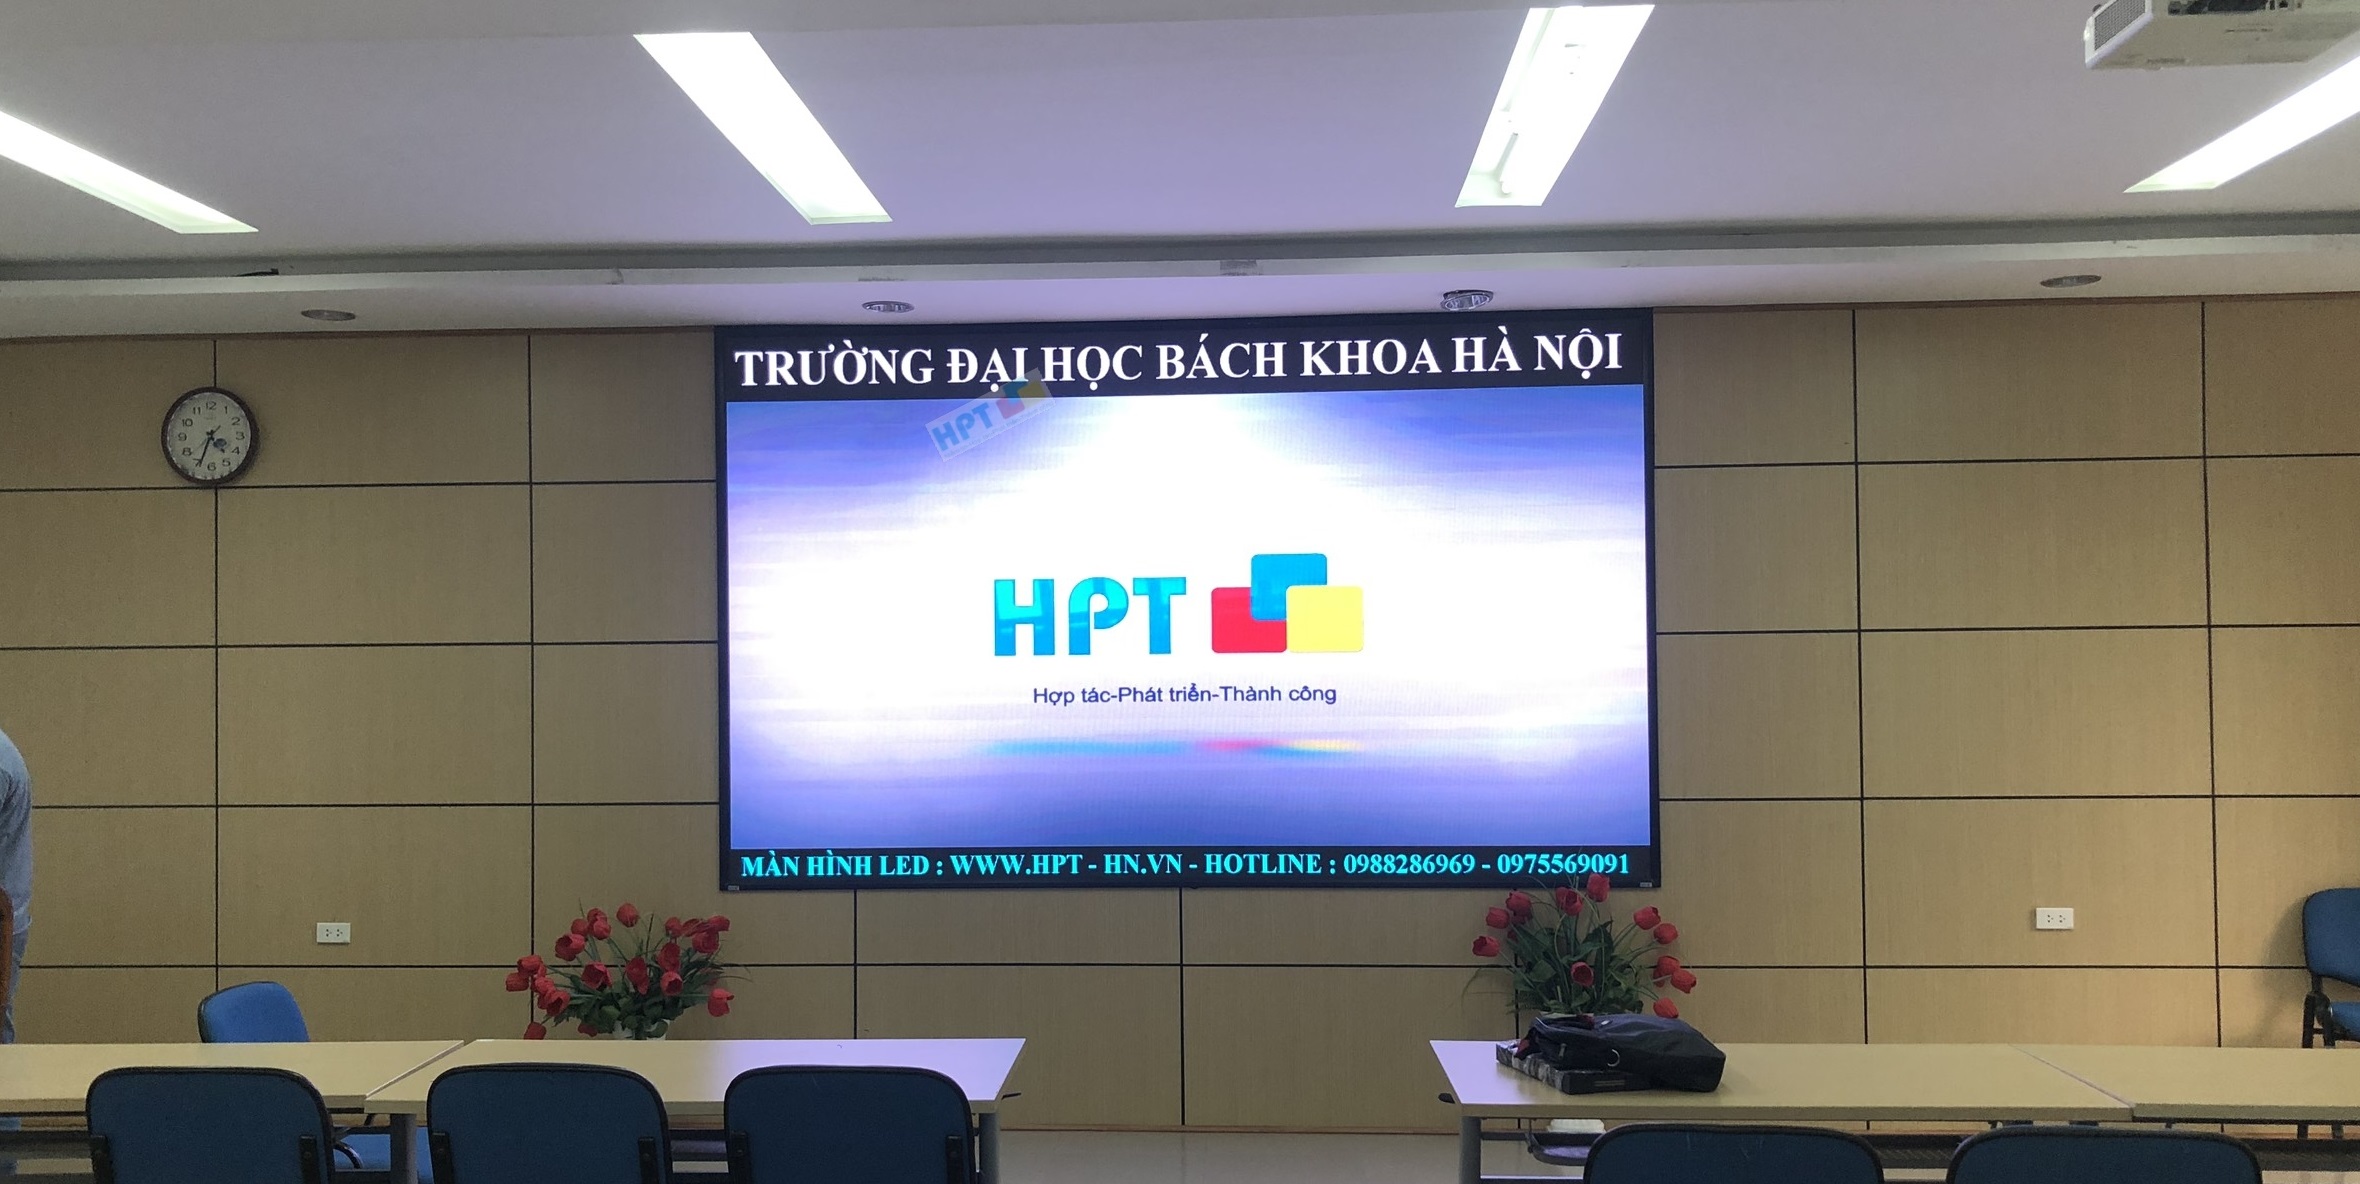 HPT lắp đặt màn hình led - Trường Đại học Bách khoa